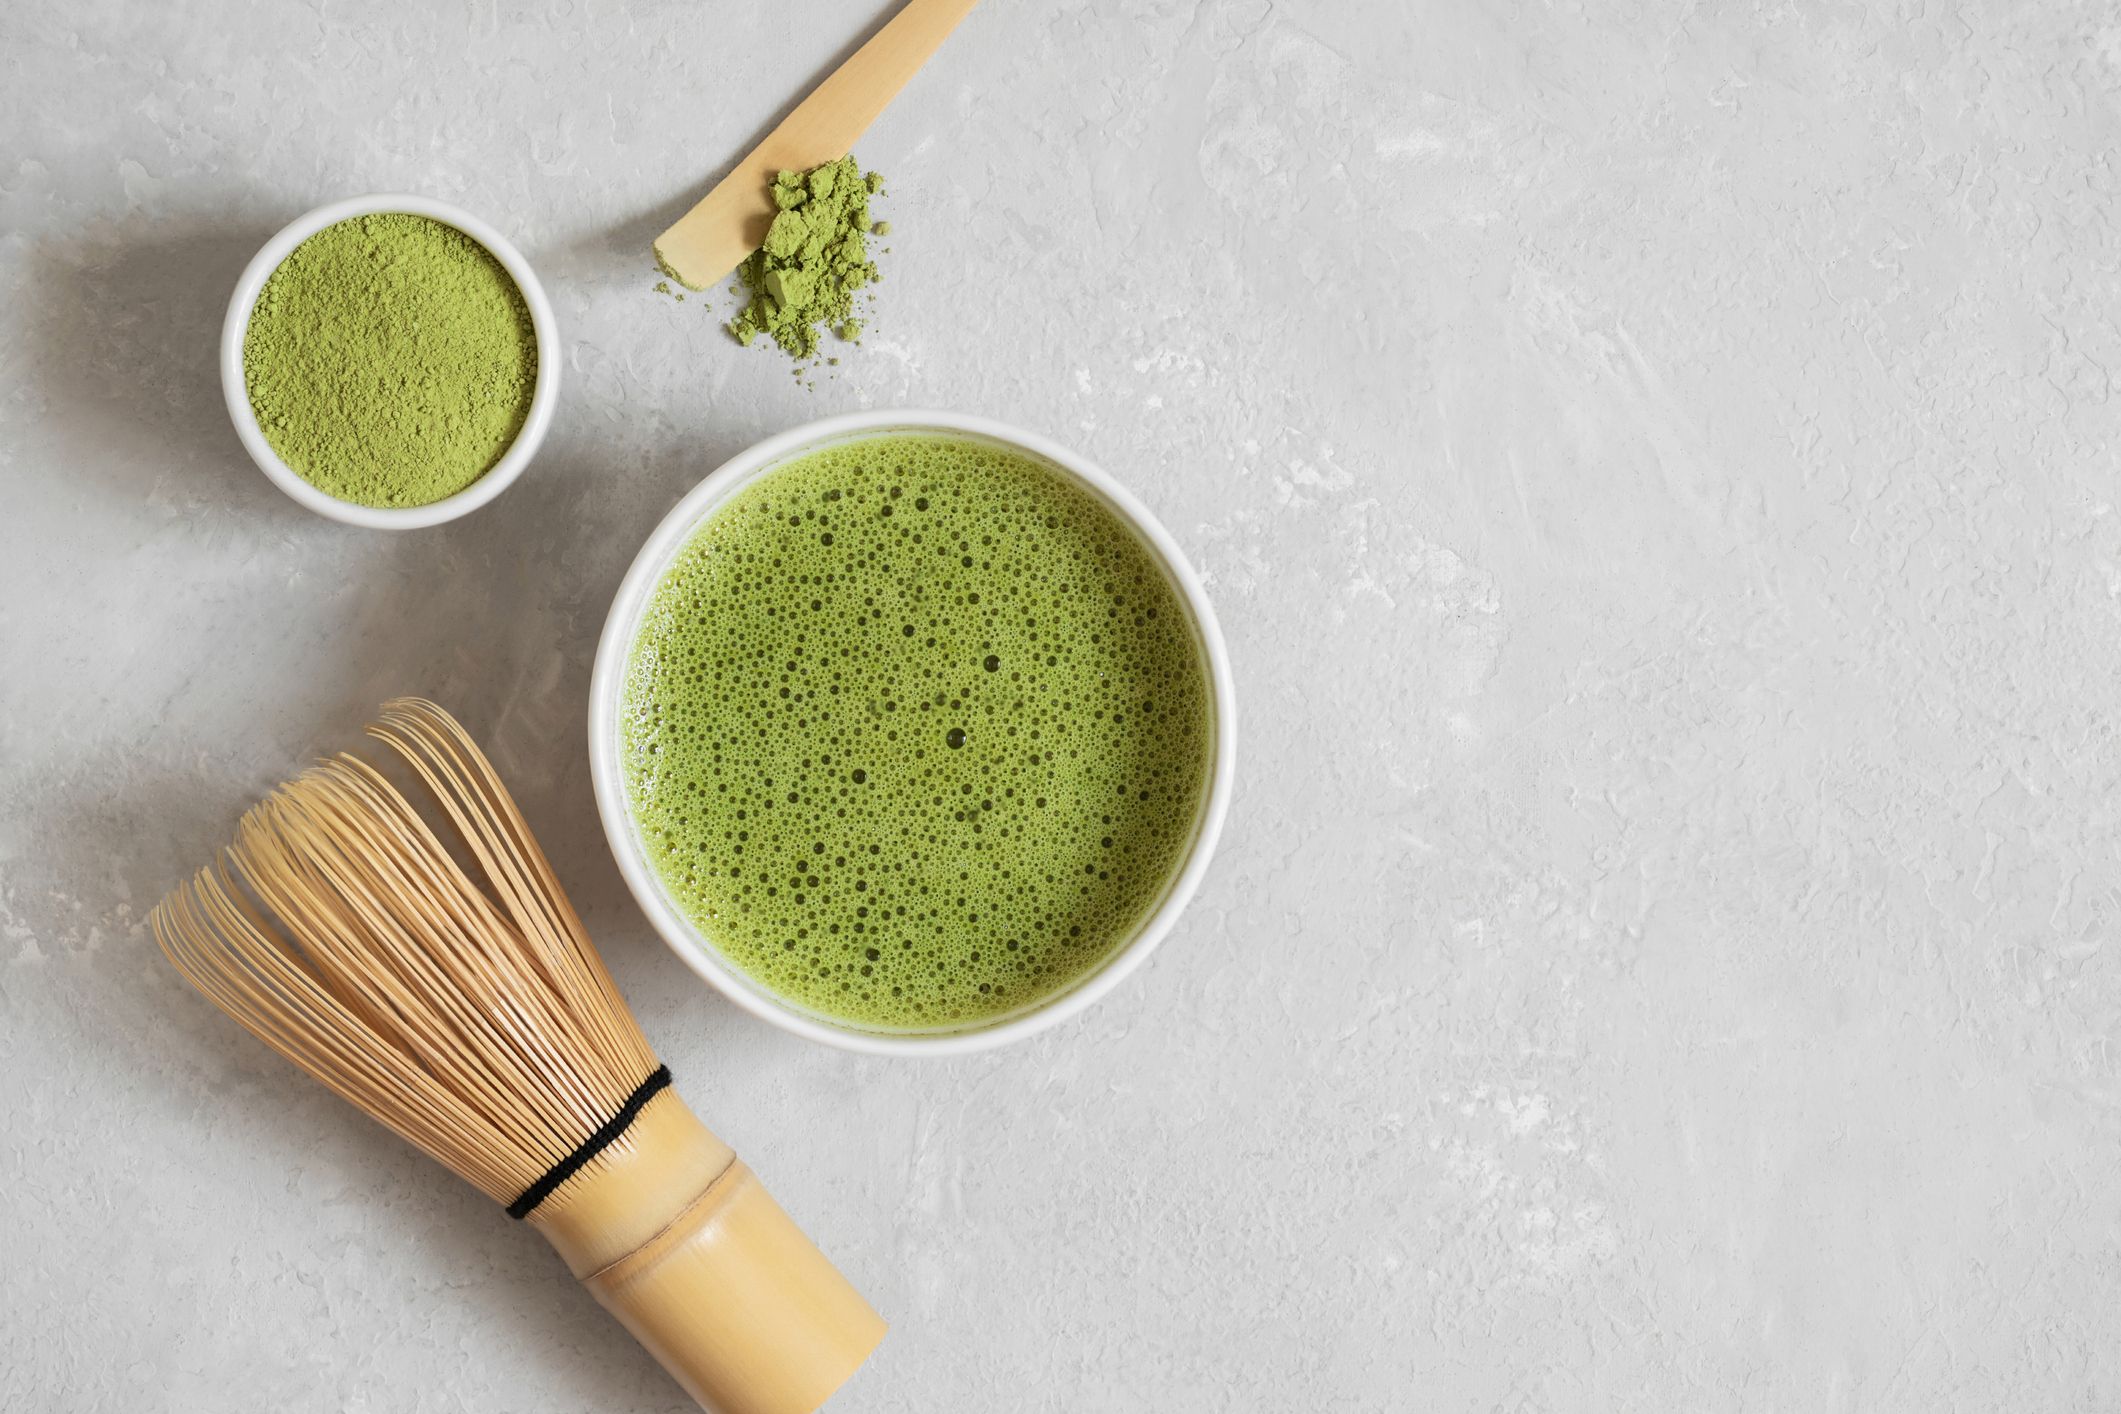 How to make Matcha Tea easily – Naoki Matcha